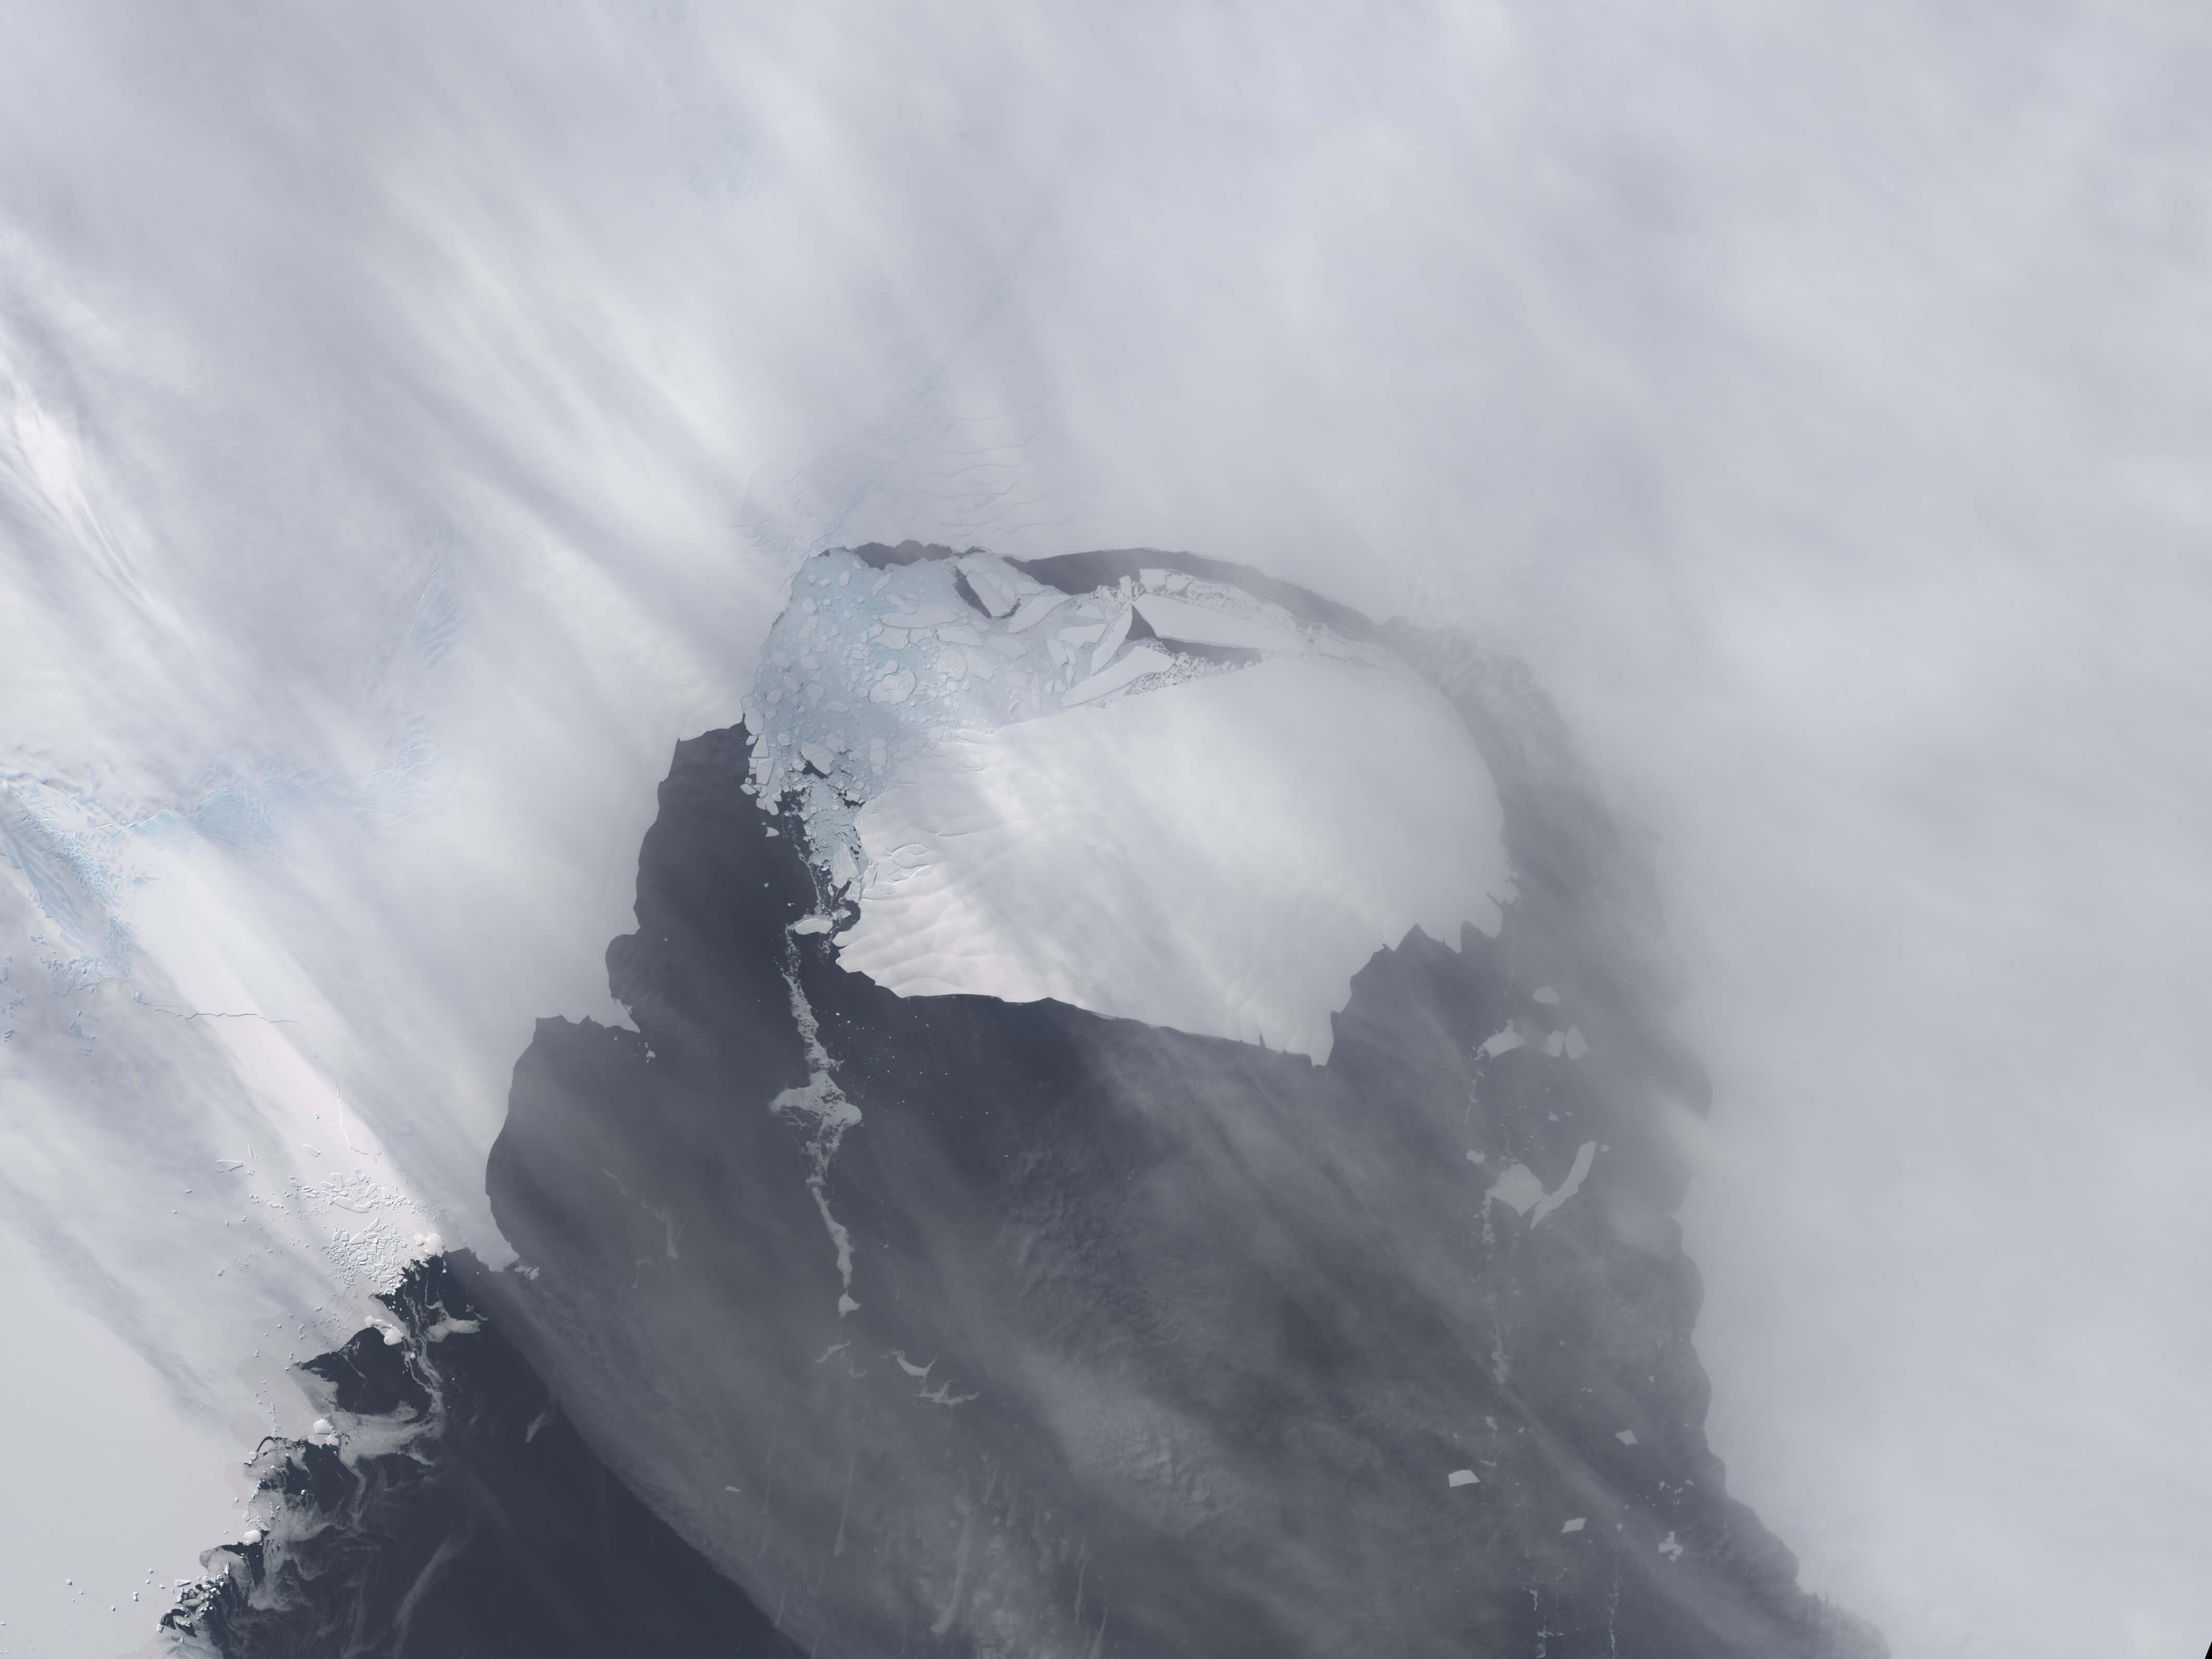 обсерваторія   NASA   зареєструвала величезний айсберг, що відколовся від берегів Антарктики і почав дрейфувати в водах Південного океану